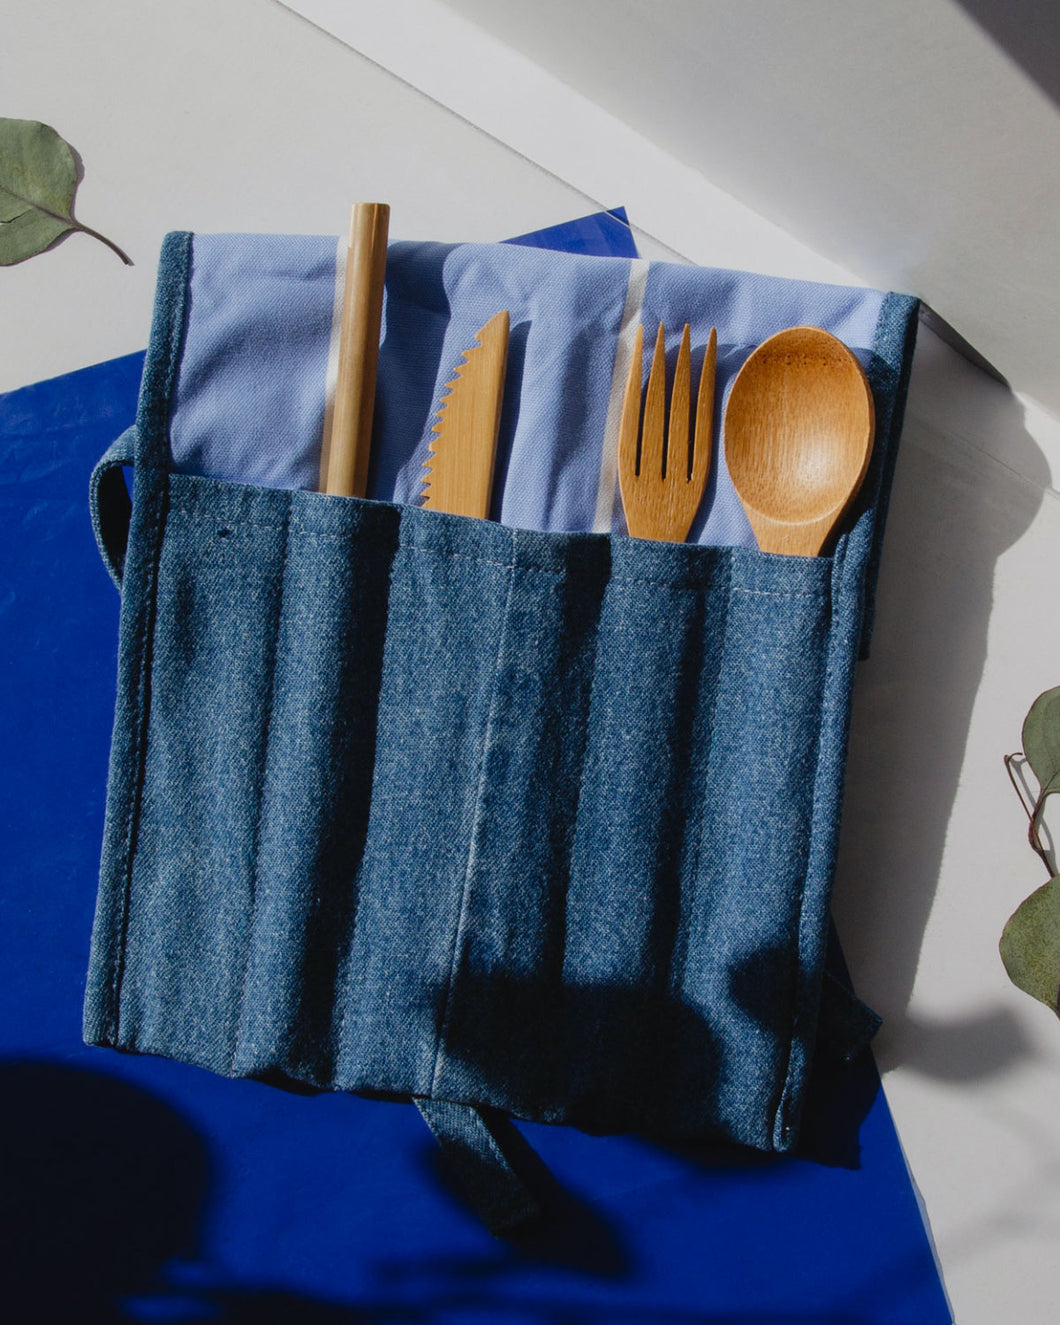 denim roll kit for cutlery. Bamboo utensils  